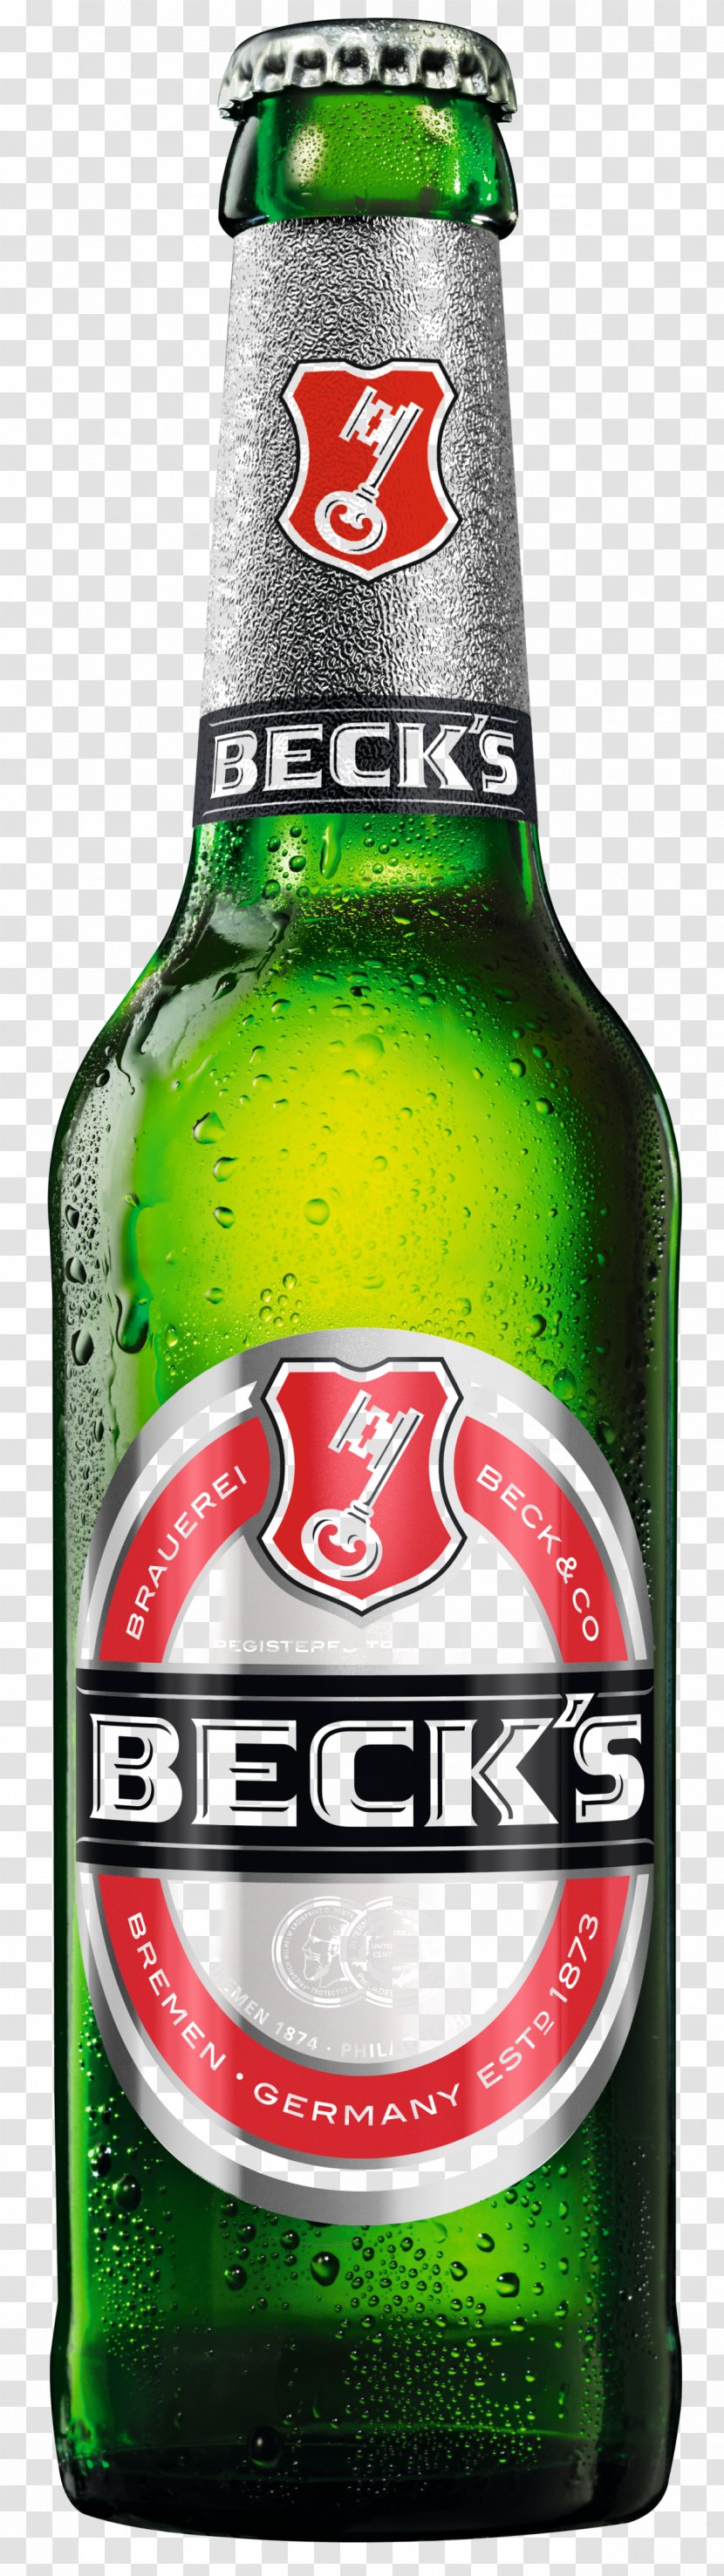 Beck's Brewery Beer Pilsner Anheuser-Busch InBev Bottle Transparent PNG